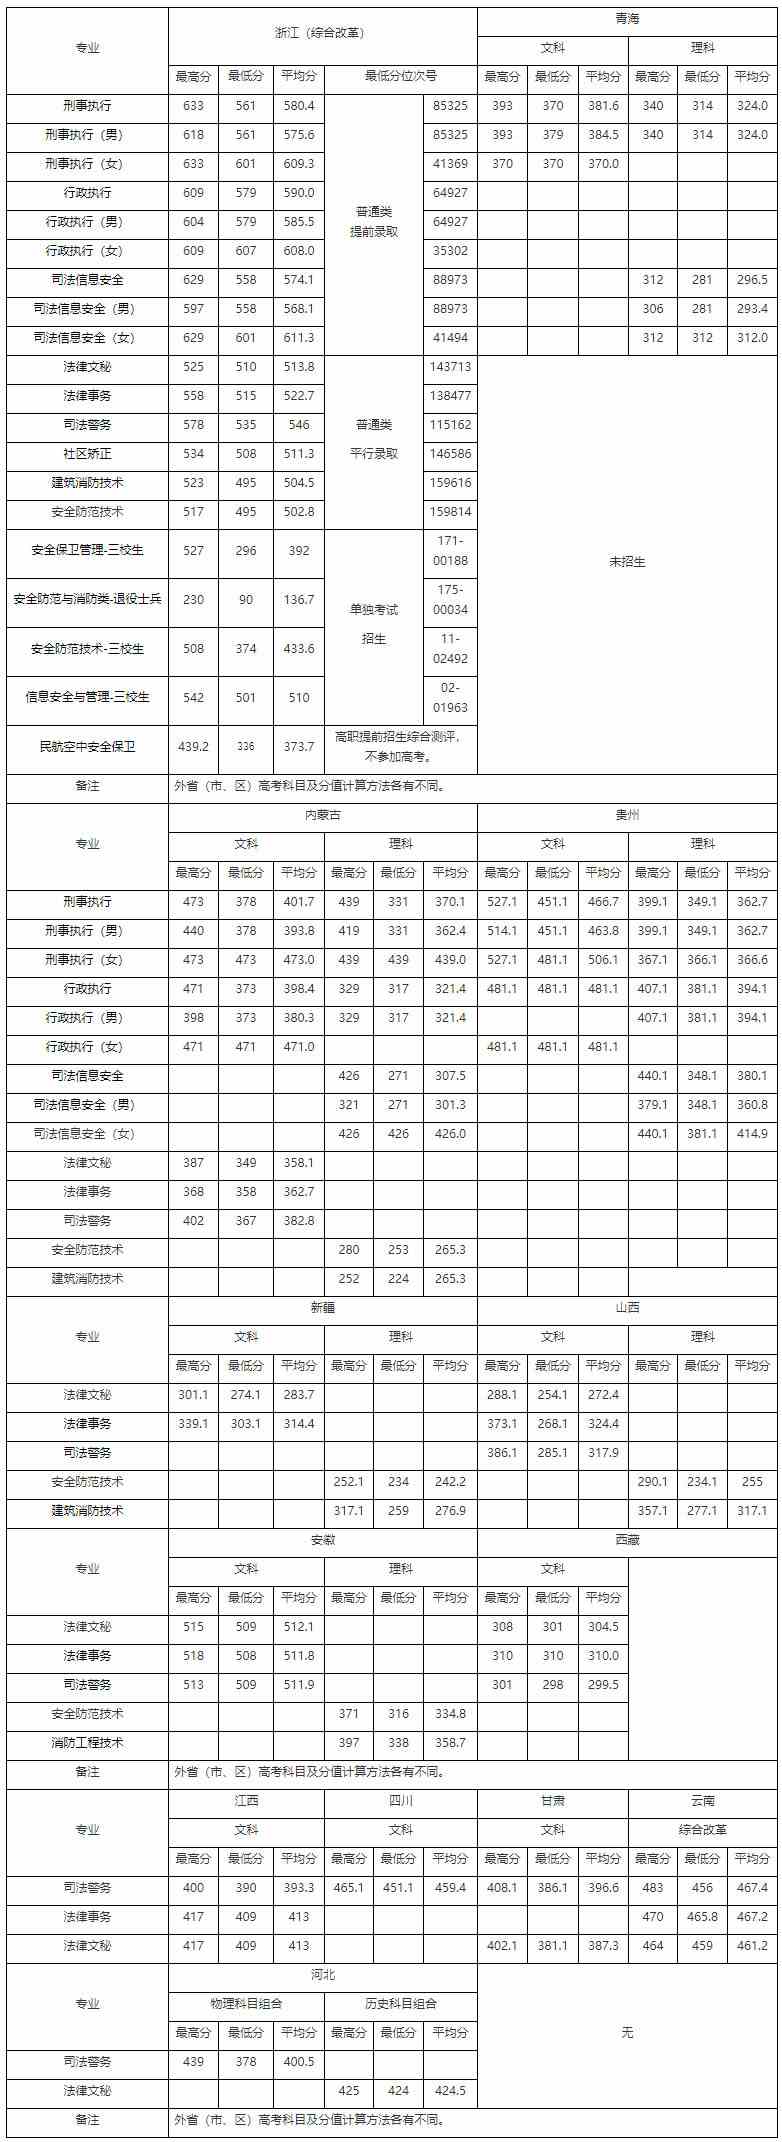 浙江警官职业学院2021年分专业录取分数统计表.jpg